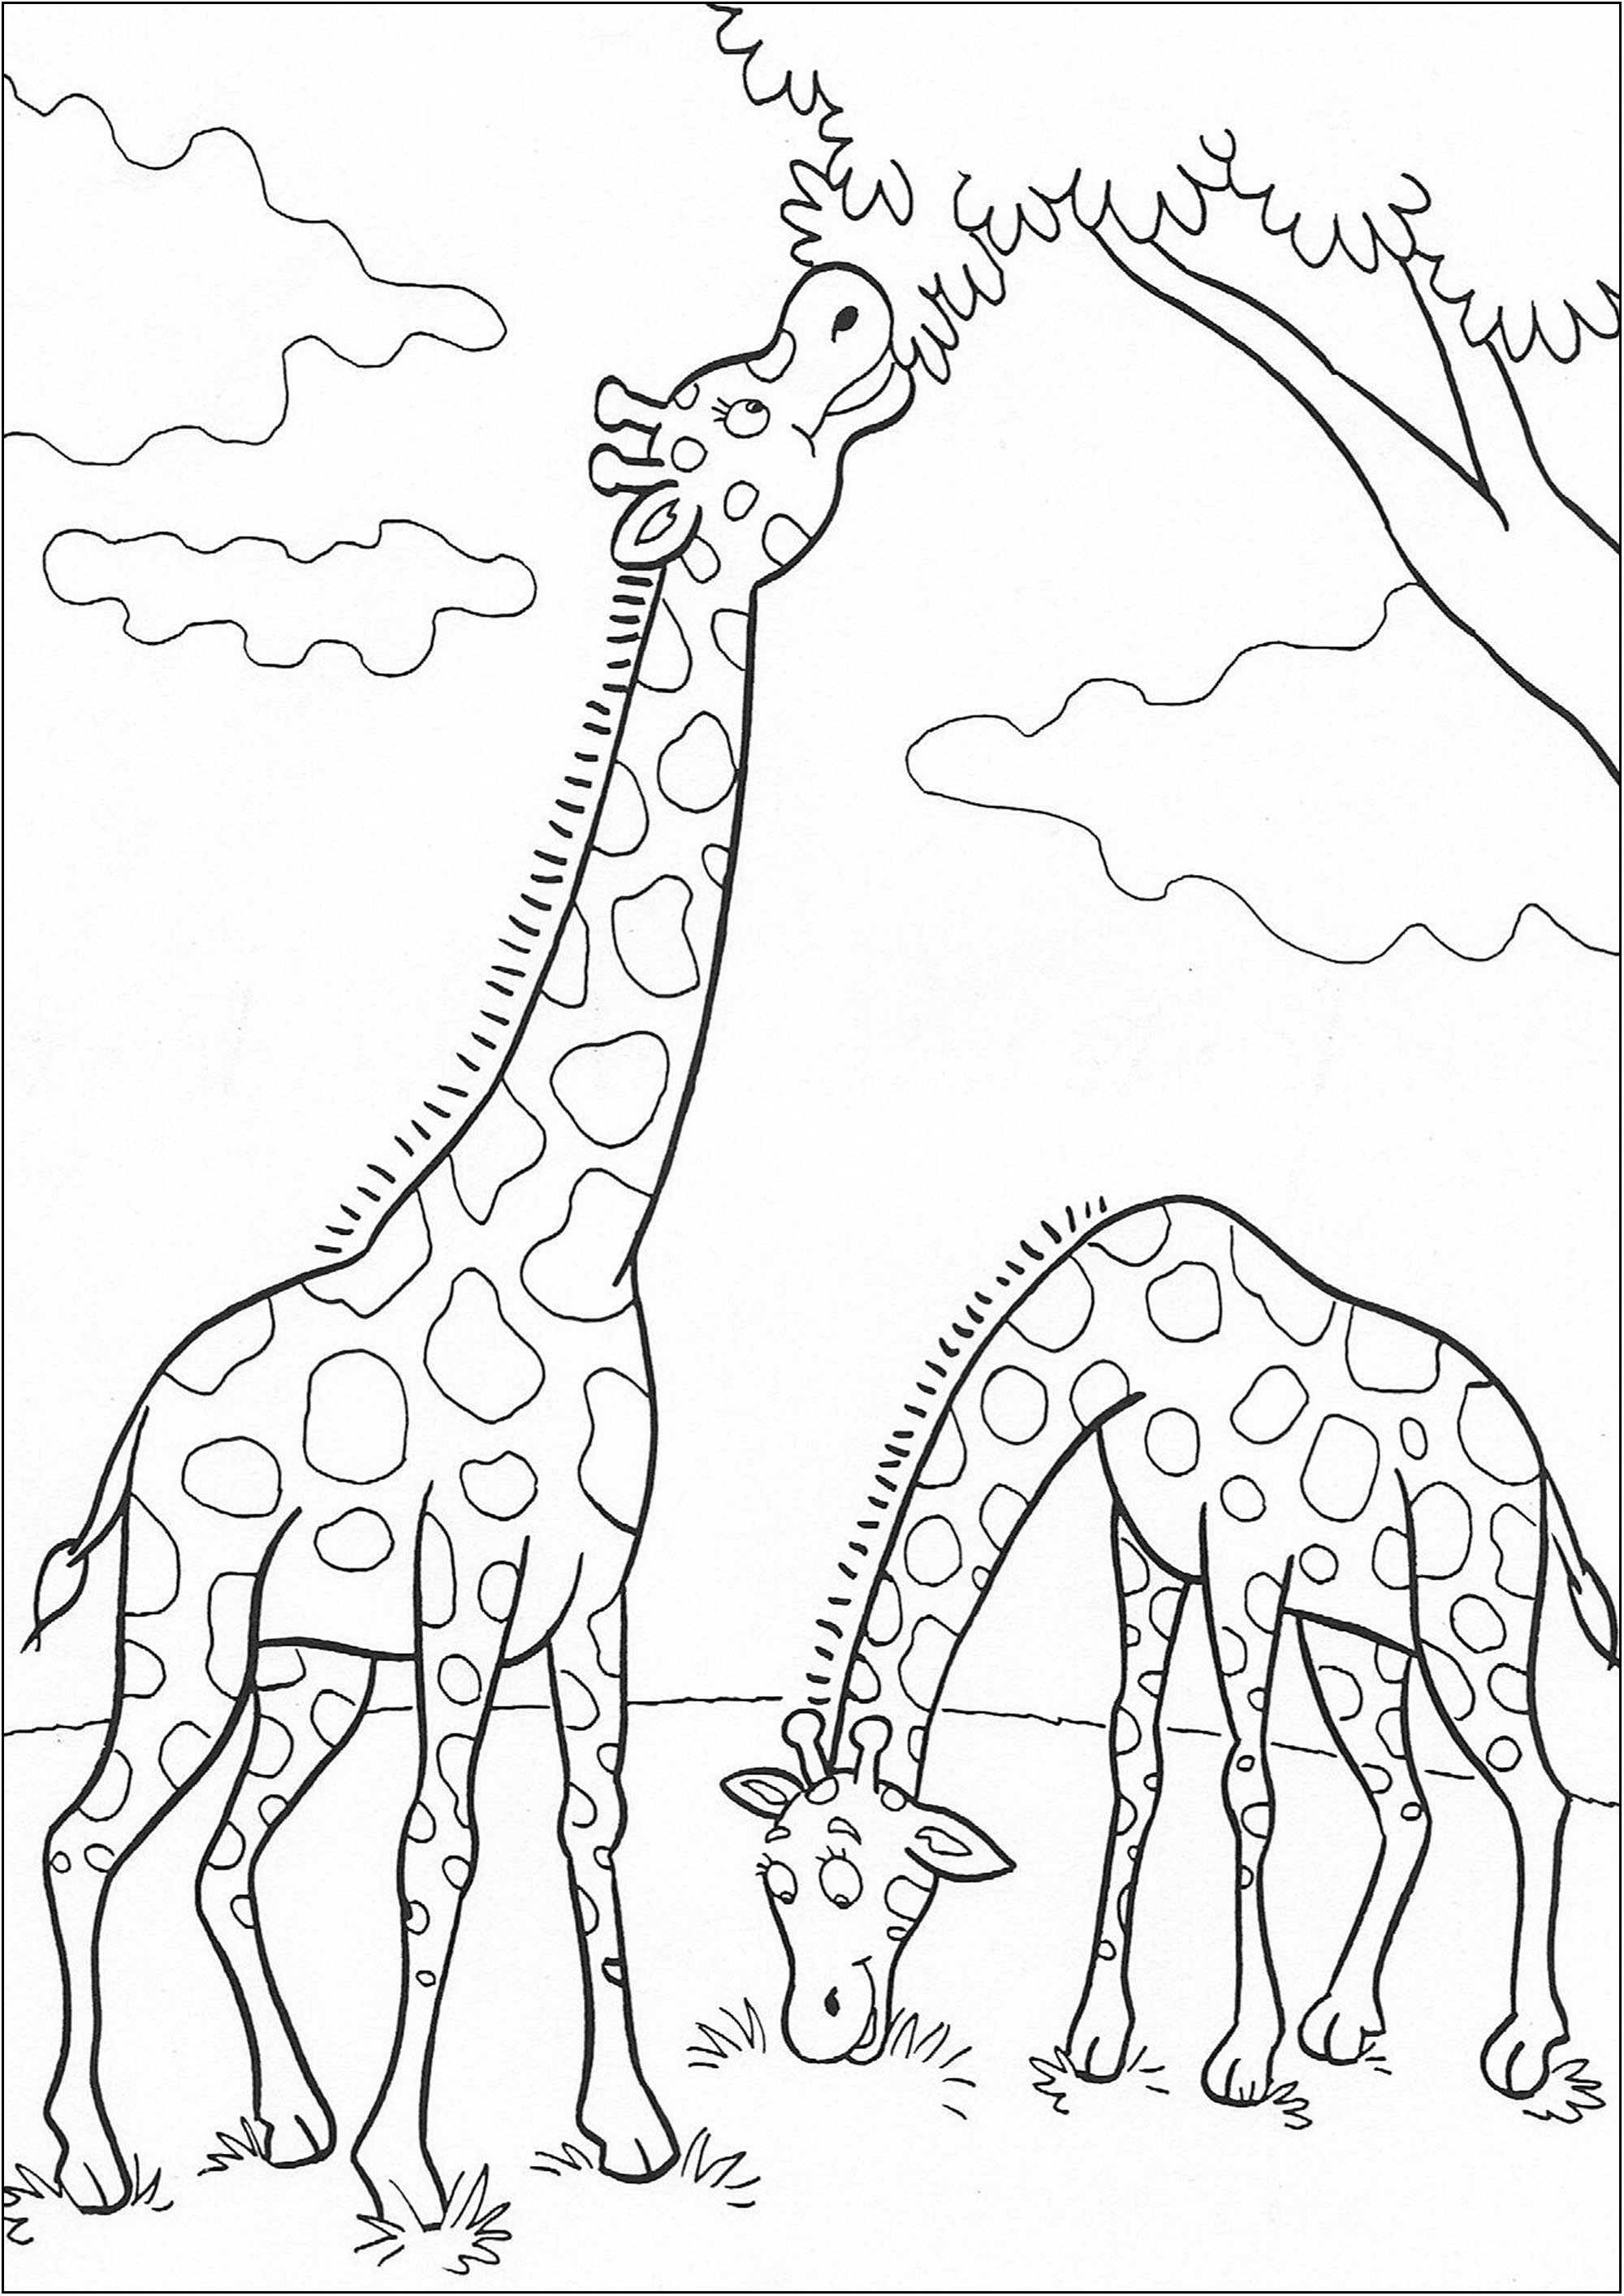 Deux girafes en plein repas. Un joli coloriage simple mais comportant des détails agréables à colorier